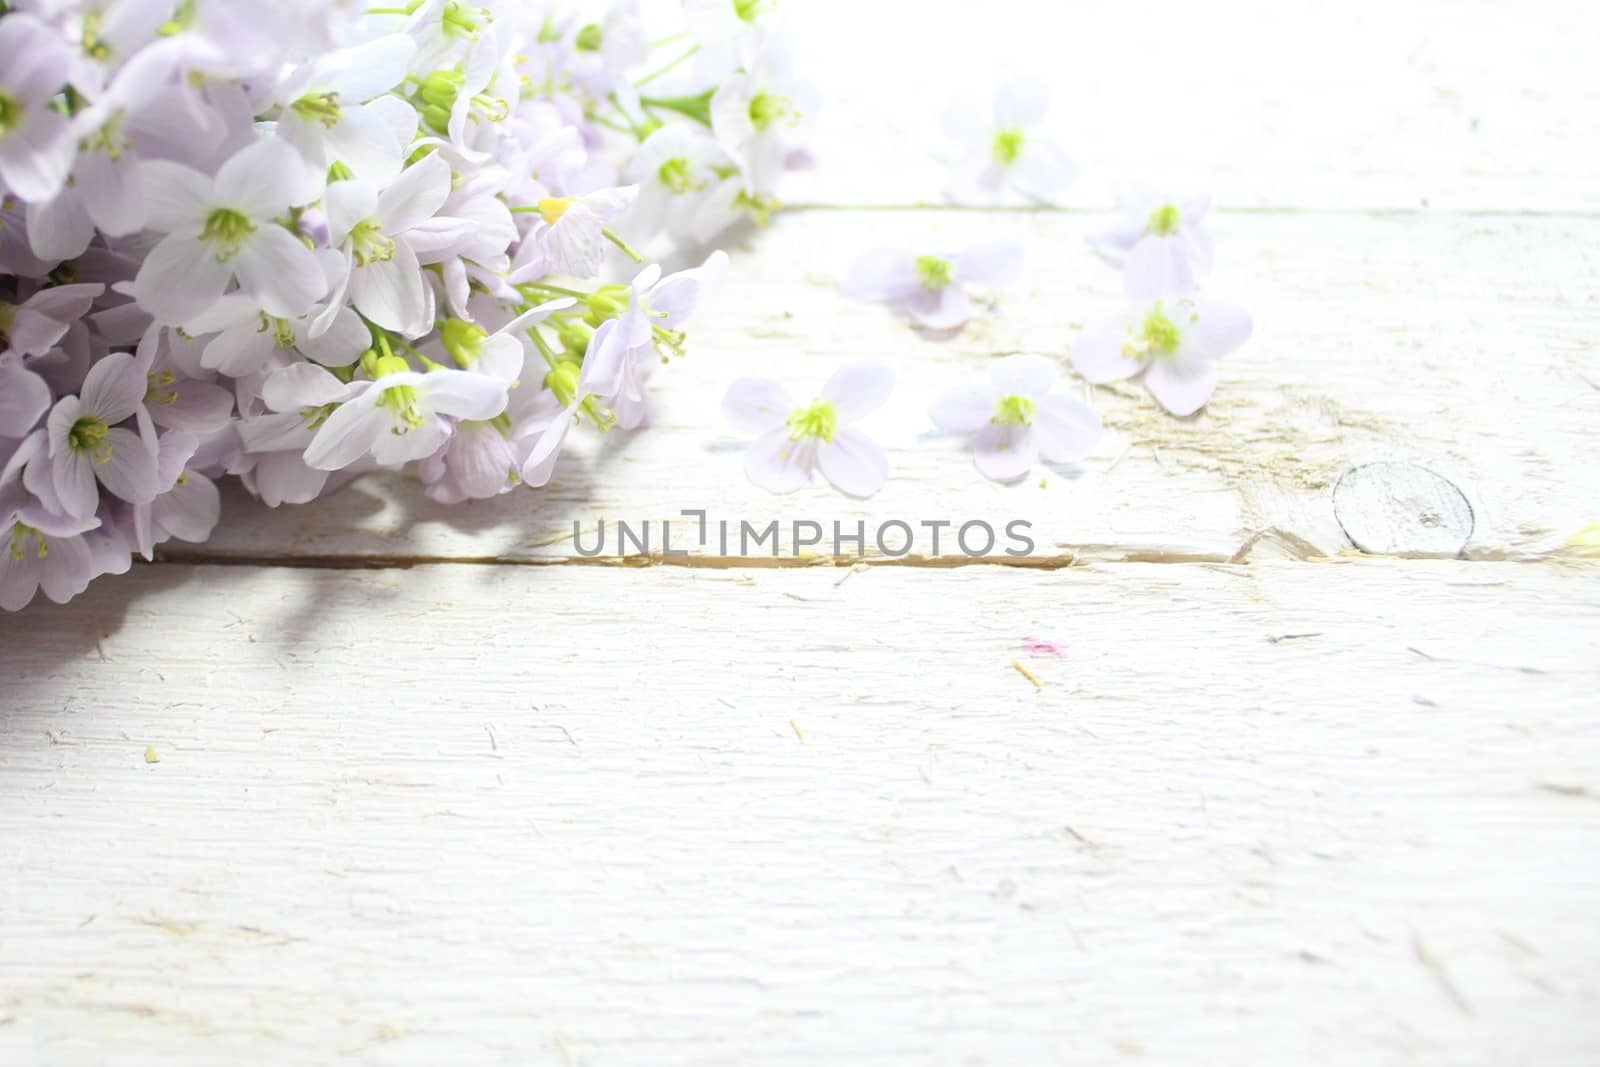 cuckoo flower on wooden boards by martina_unbehauen